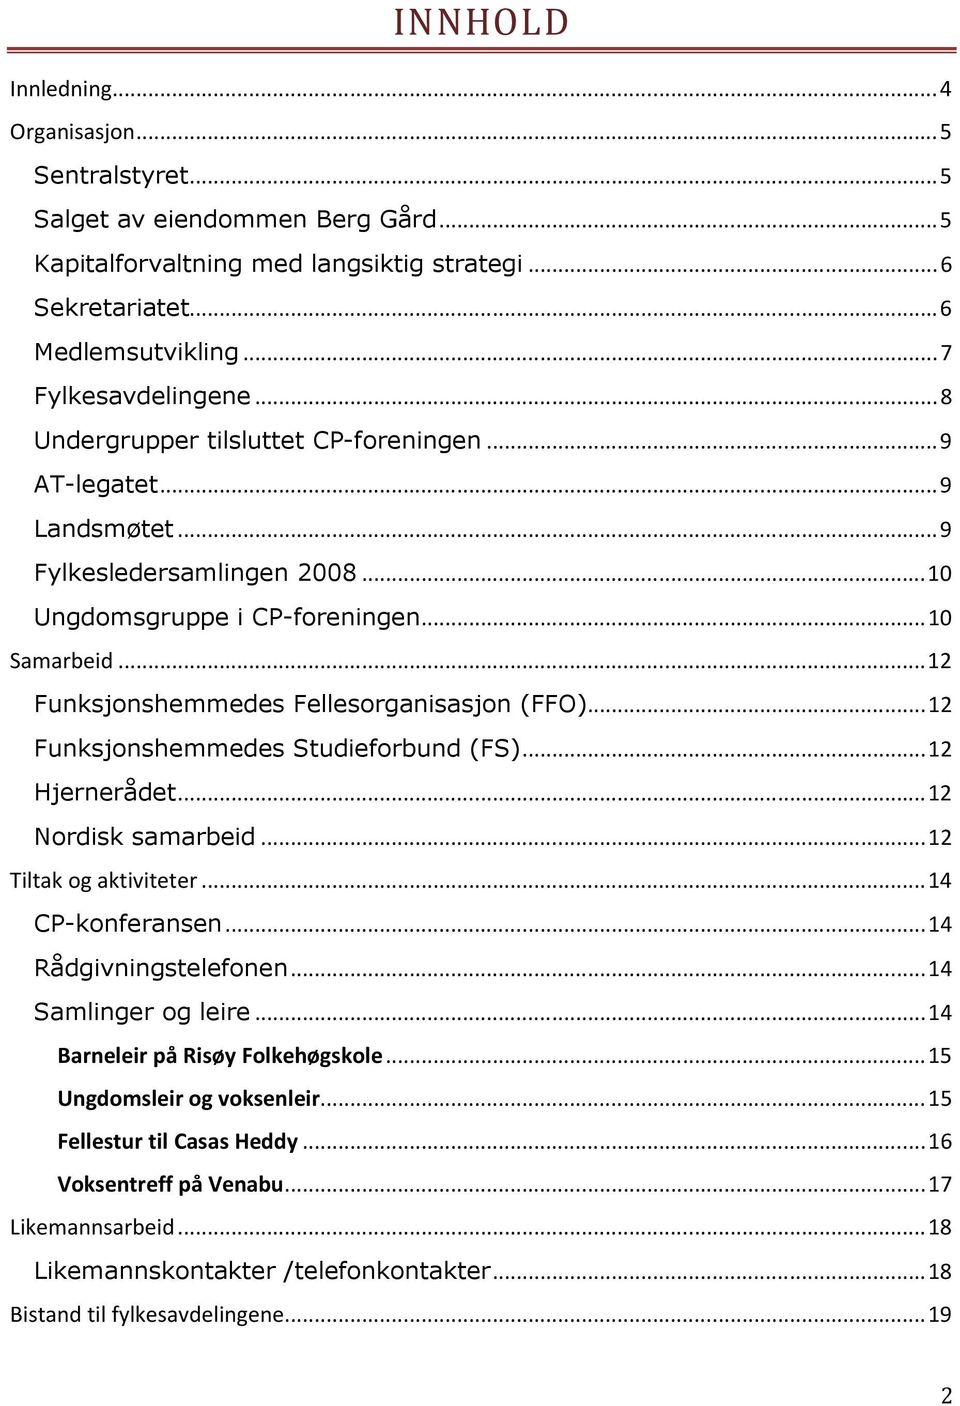 .. 12 Funksjonshemmedes Fellesorganisasjon (FFO)... 12 Funksjonshemmedes Studieforbund (FS)... 12 Hjernerådet... 12 Nordisk samarbeid... 12 Tiltak og aktiviteter... 14 CP-konferansen.